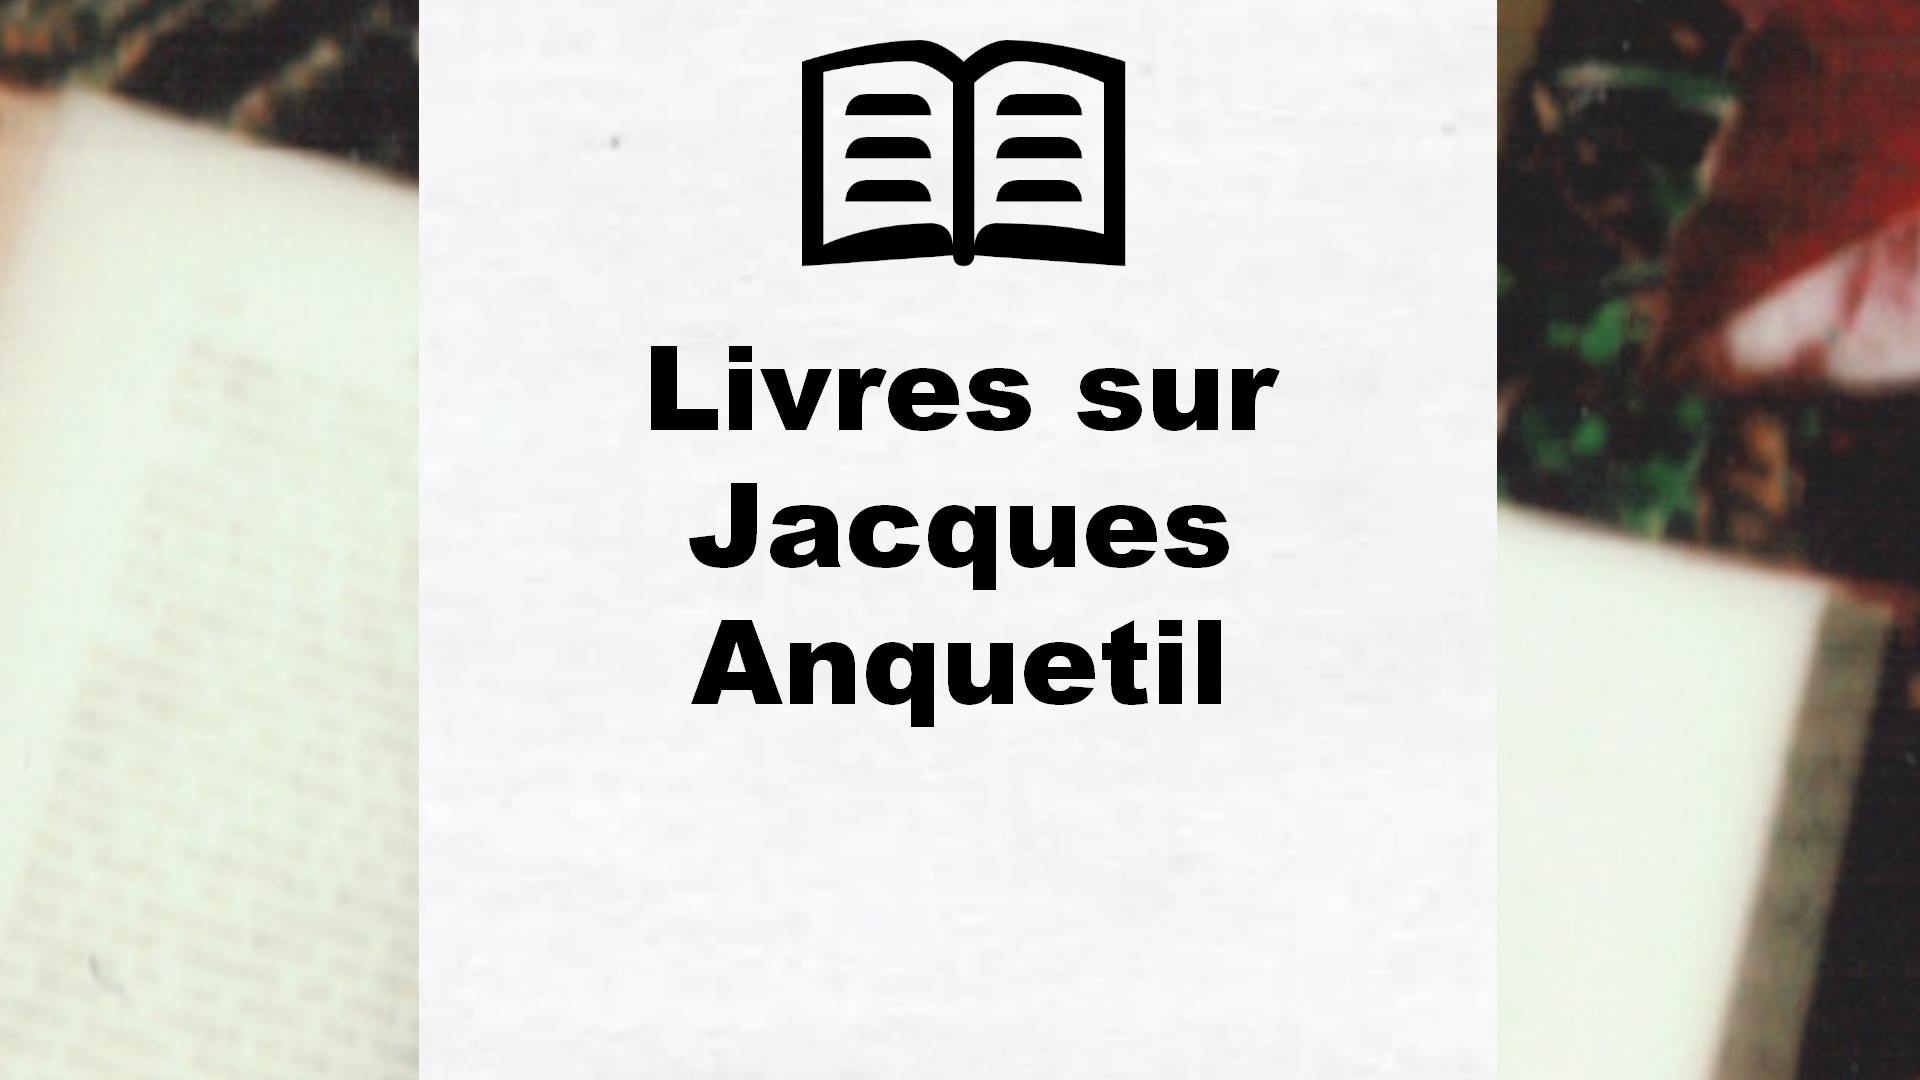 Livres sur Jacques Anquetil